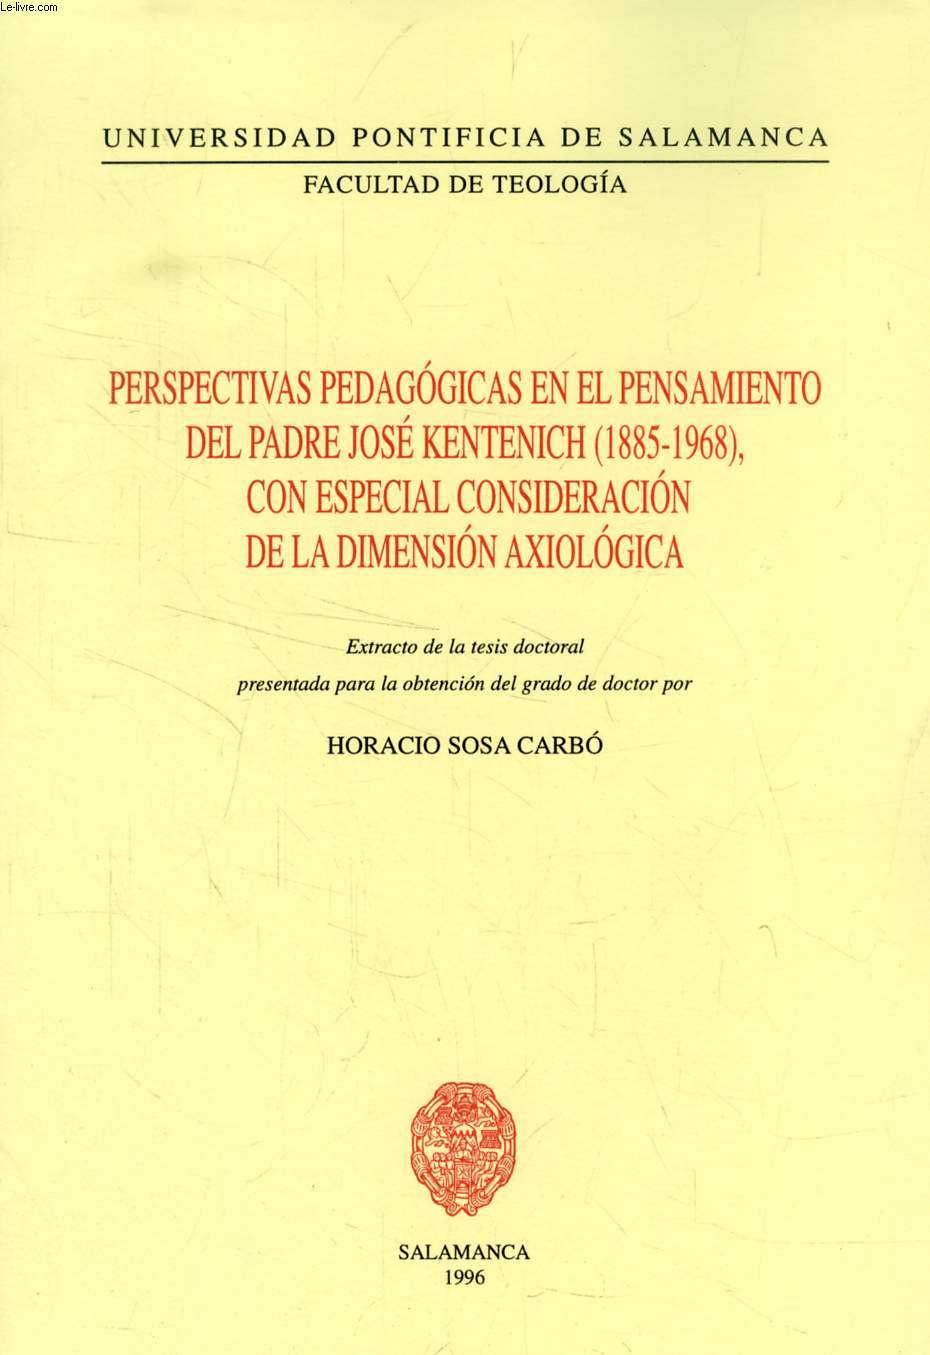 PERSPECTIVAS PEDAGOGICAS EN EL PENSAMIENTO DEL PADRE JOSE KENTENICH (1885-1968), CON ESPECIAL CONSIDERACION DE LA DIMENSION AXIOLOGICA (EXTRACTO DE LA TESIS)